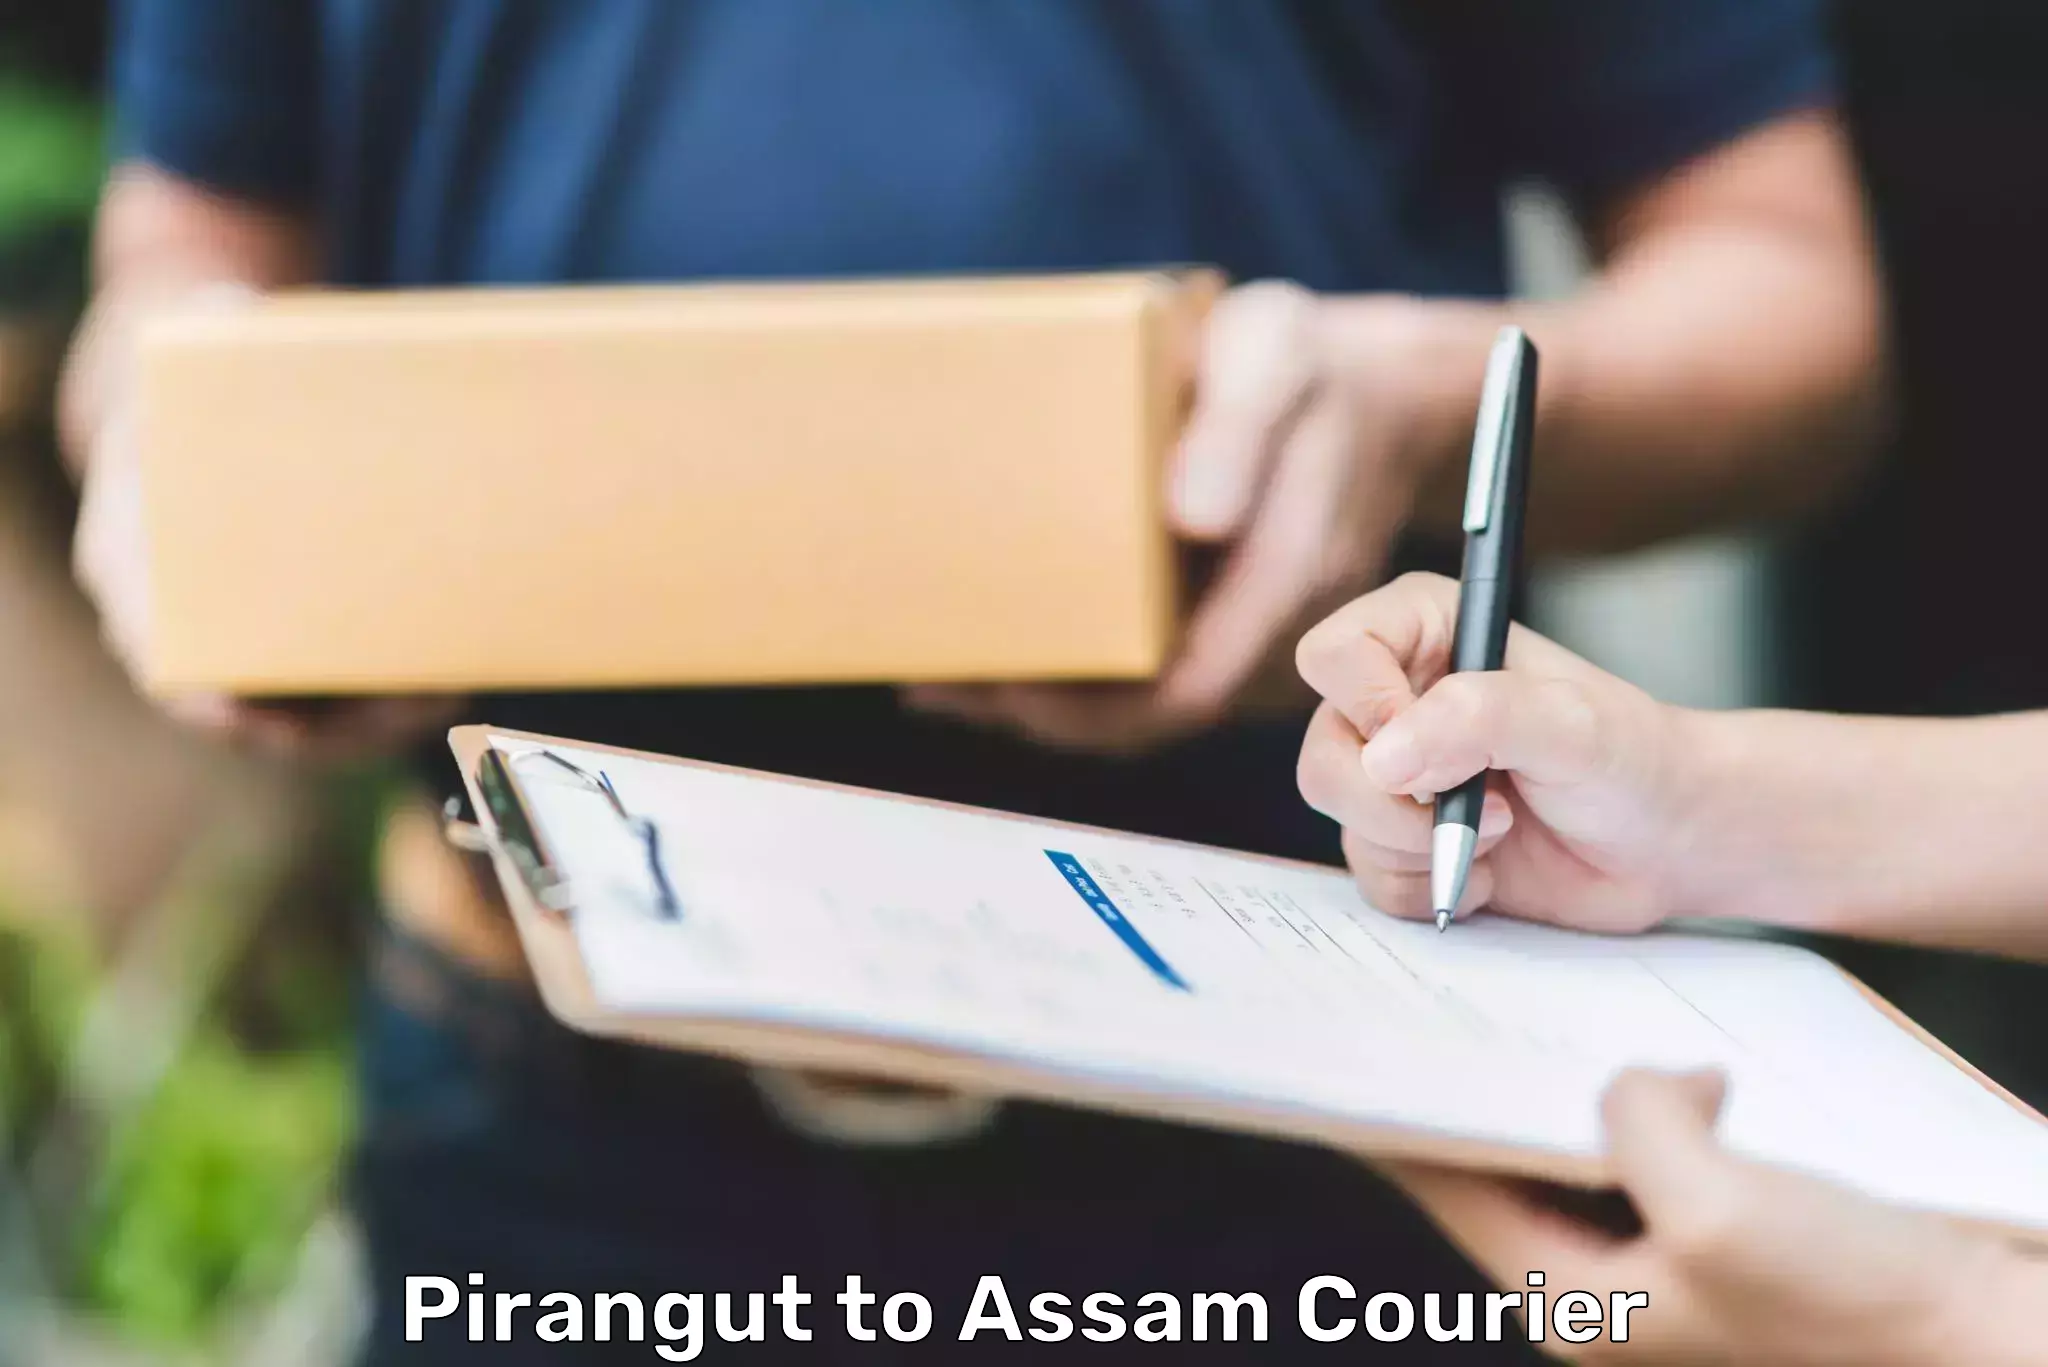 Express logistics service Pirangut to Assam